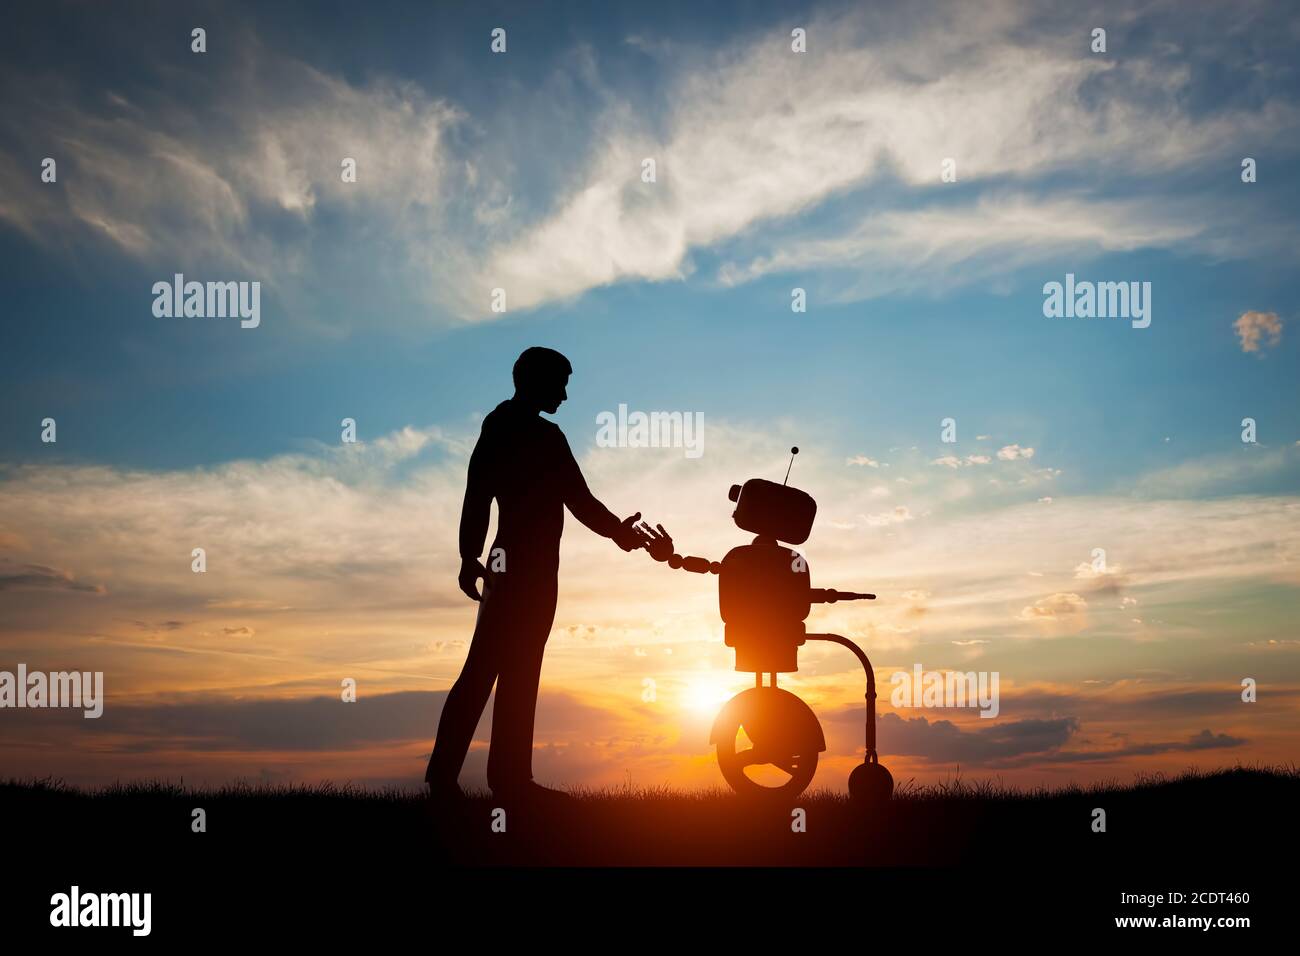 El hombre y el robot se reúnen y apretón de manos. Concepto de la futura interacción con la inteligencia artificial Foto de stock